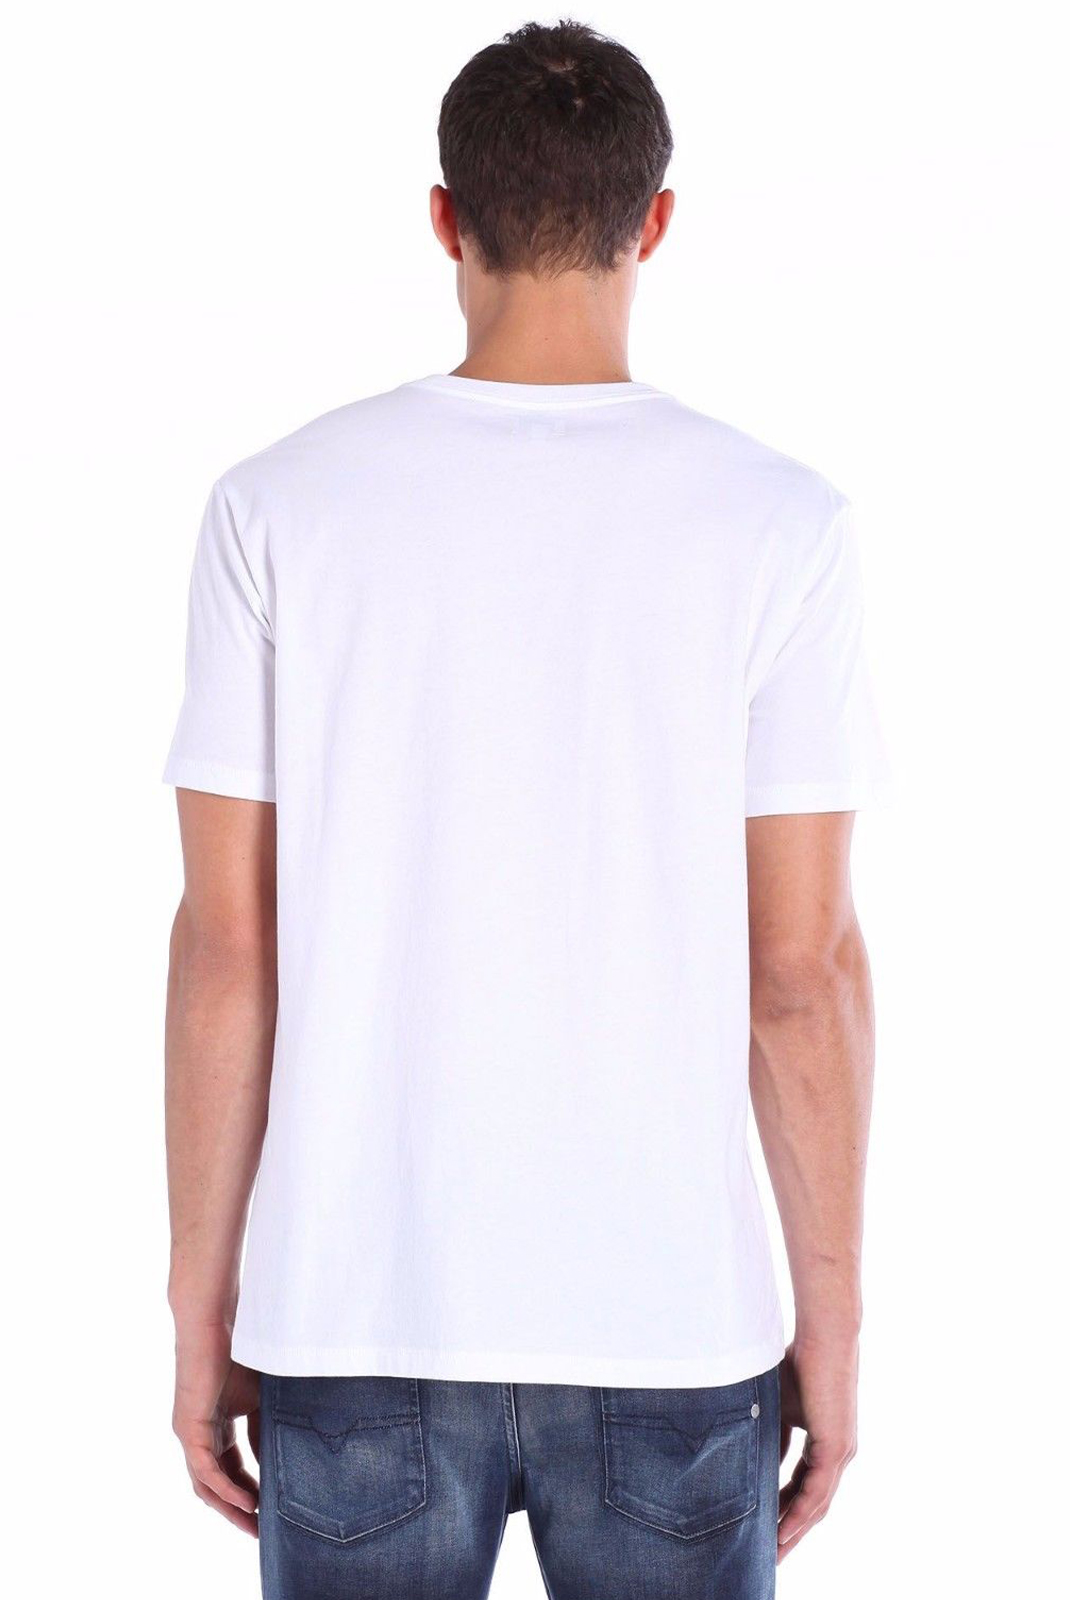 Tee-shirt blanc à manches courtes homme Diesel - Nitare